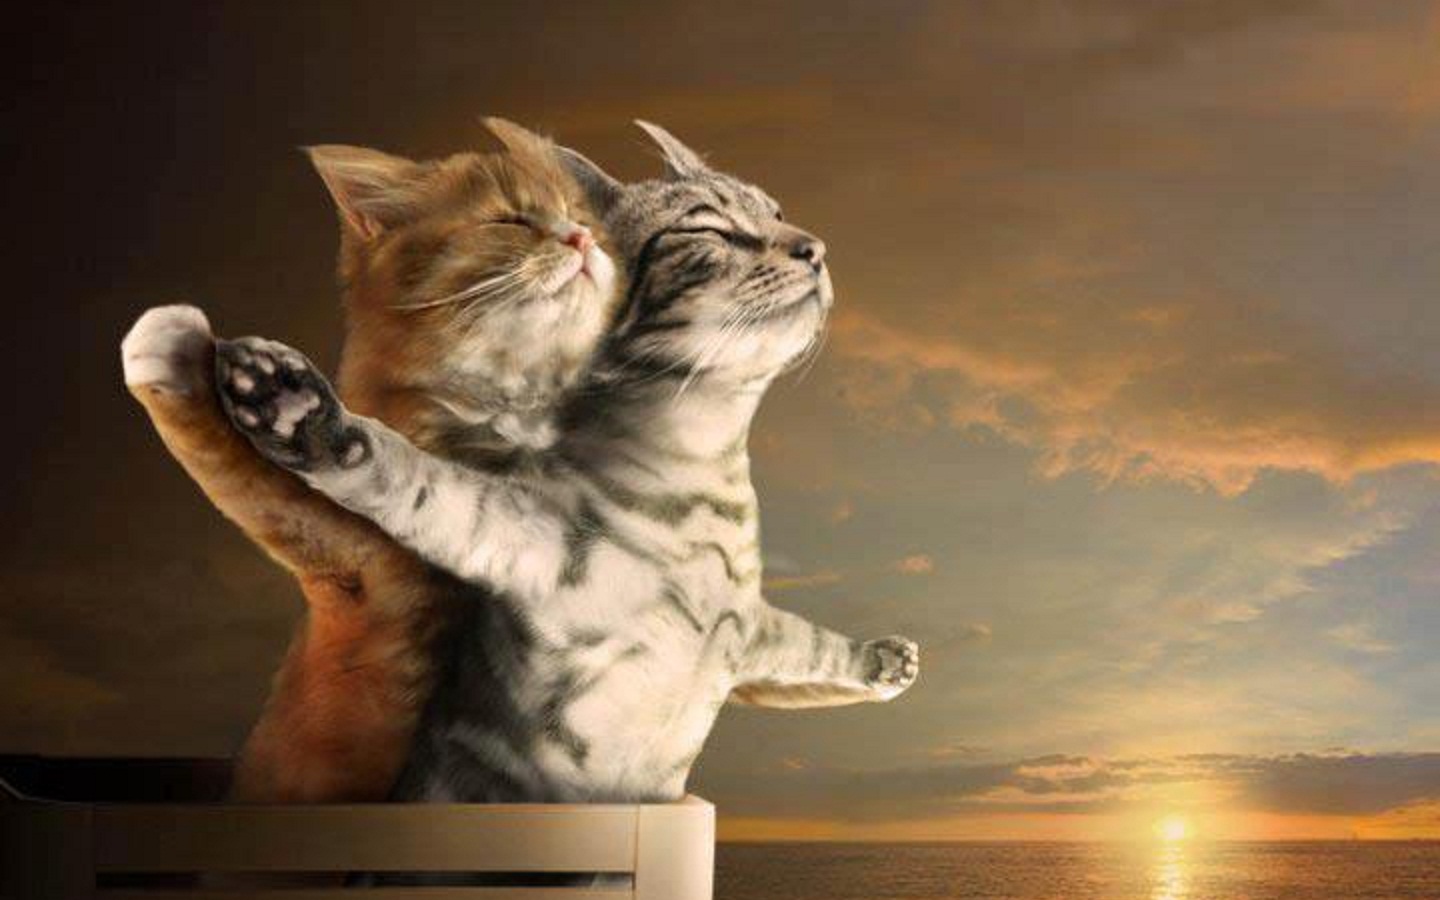 Kittens in "Titanic" Moment